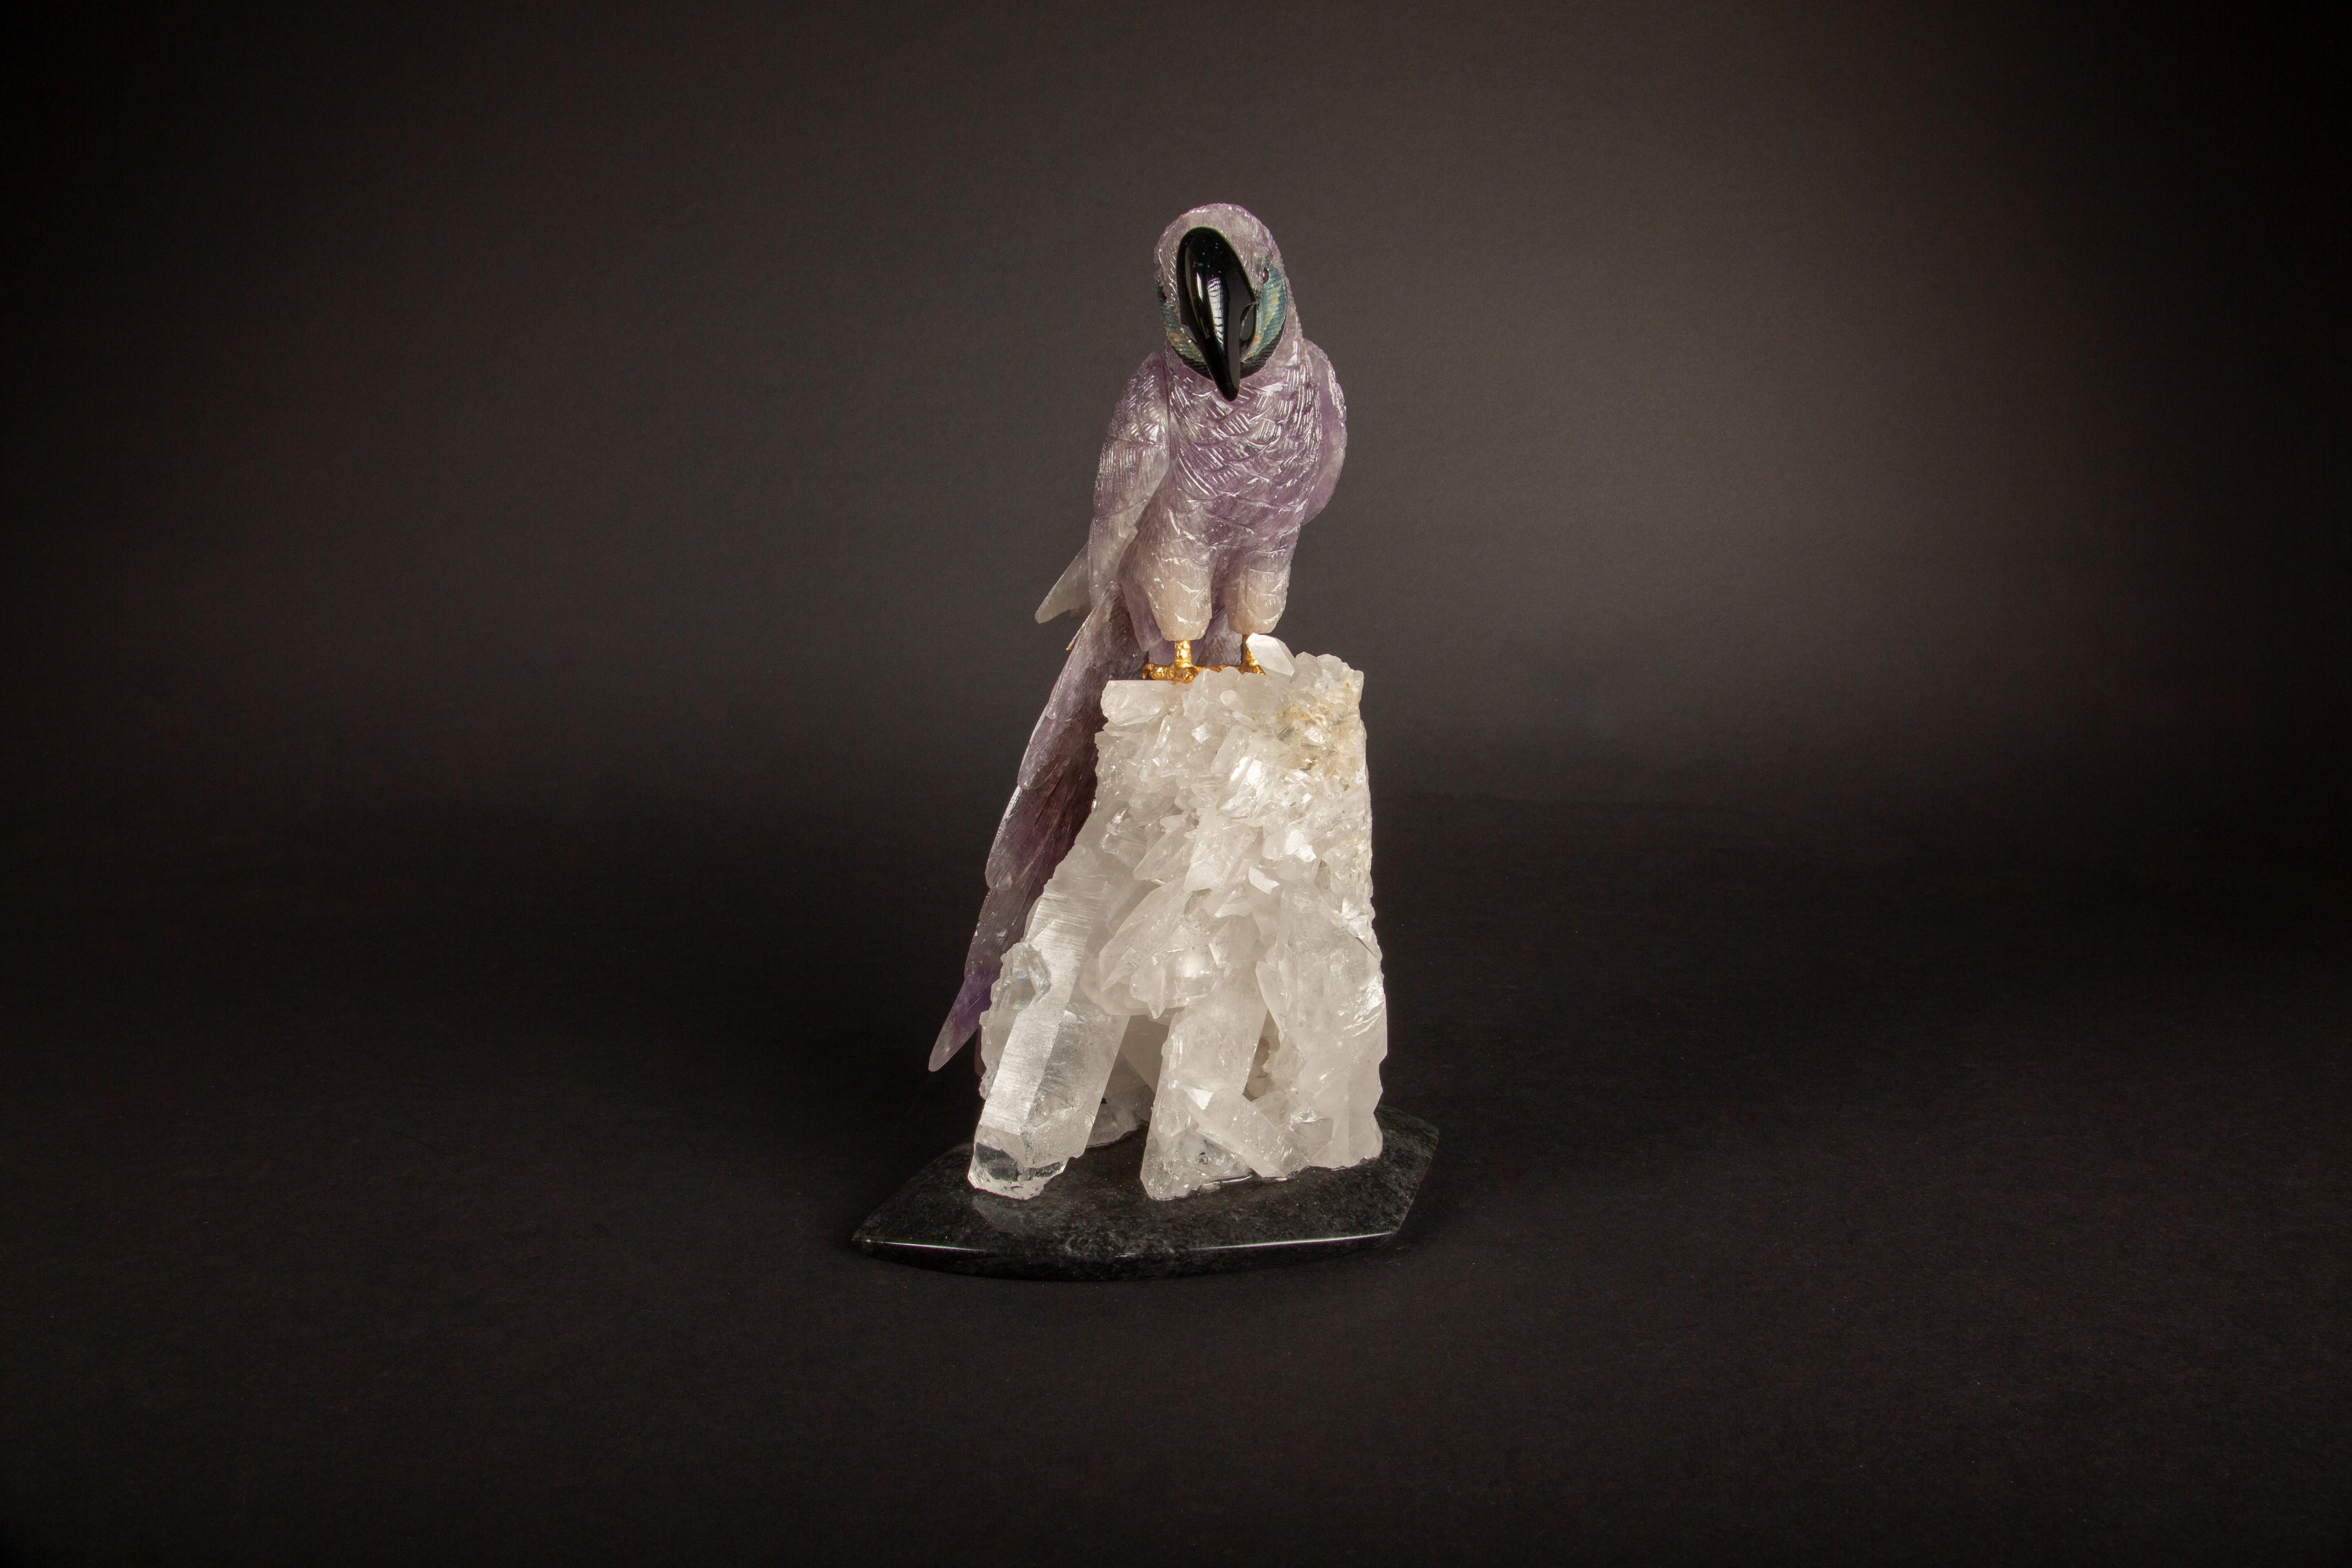 Dieser exquisite, 10,5 Zoll hohe, geschnitzte, lebhafte Amethyst-Papagei, der in Argentinien in sorgfältiger Handarbeit hergestellt wurde, ist ein atemberaubendes Beispiel für handwerkliche Kunstfertigkeit. Die auf einem Bergkristall thronende